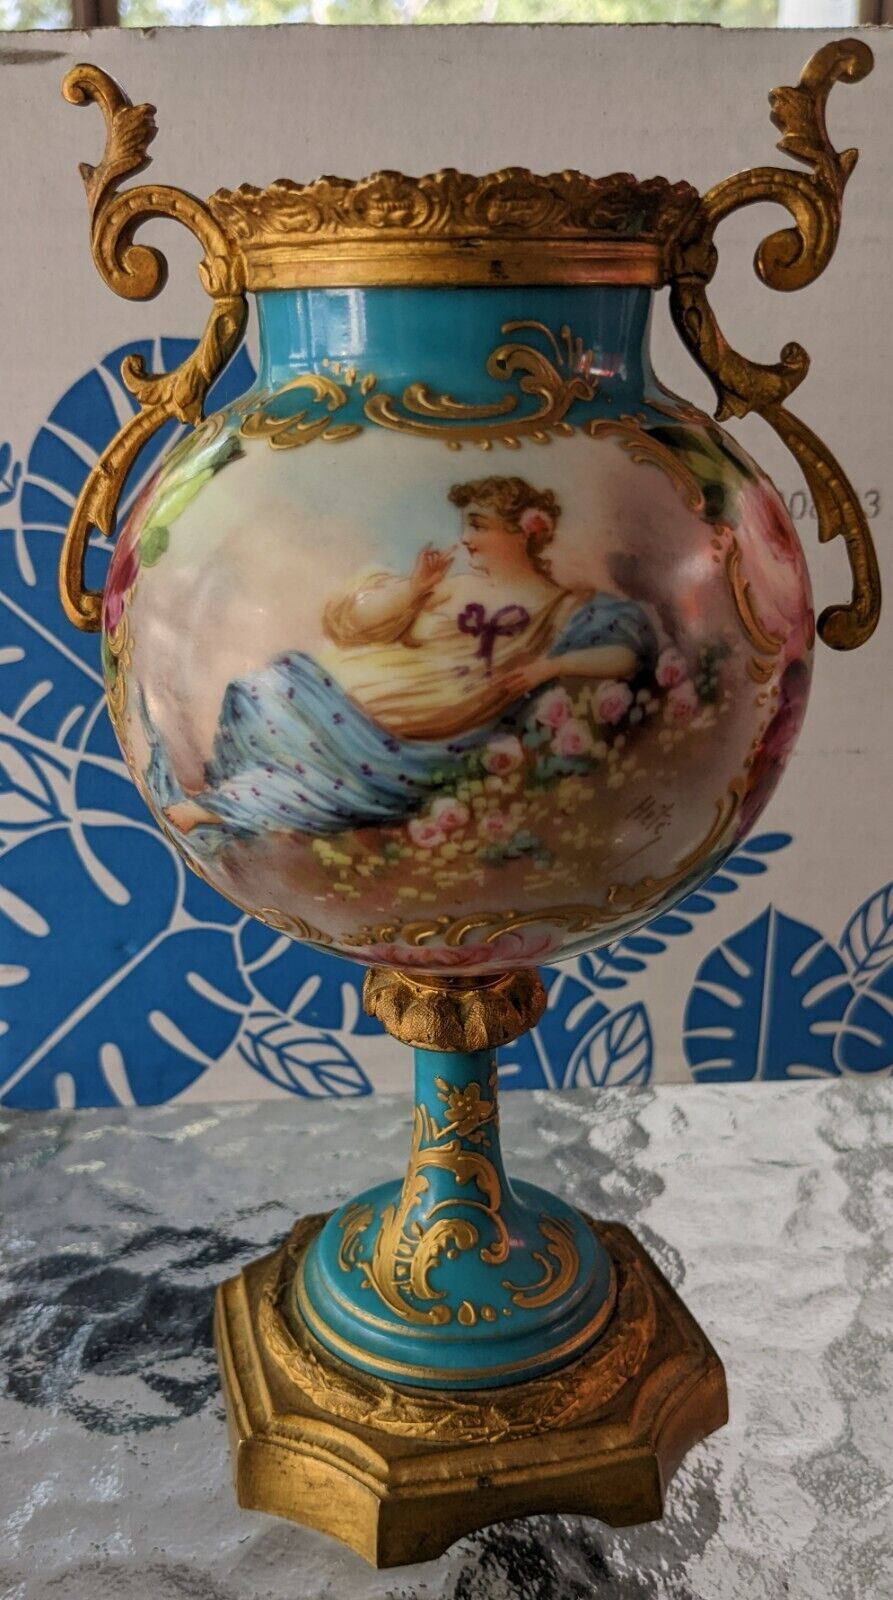 1771 Sèvres porcelain urn Vase Gilt bronze France signed Hete Chateau Style